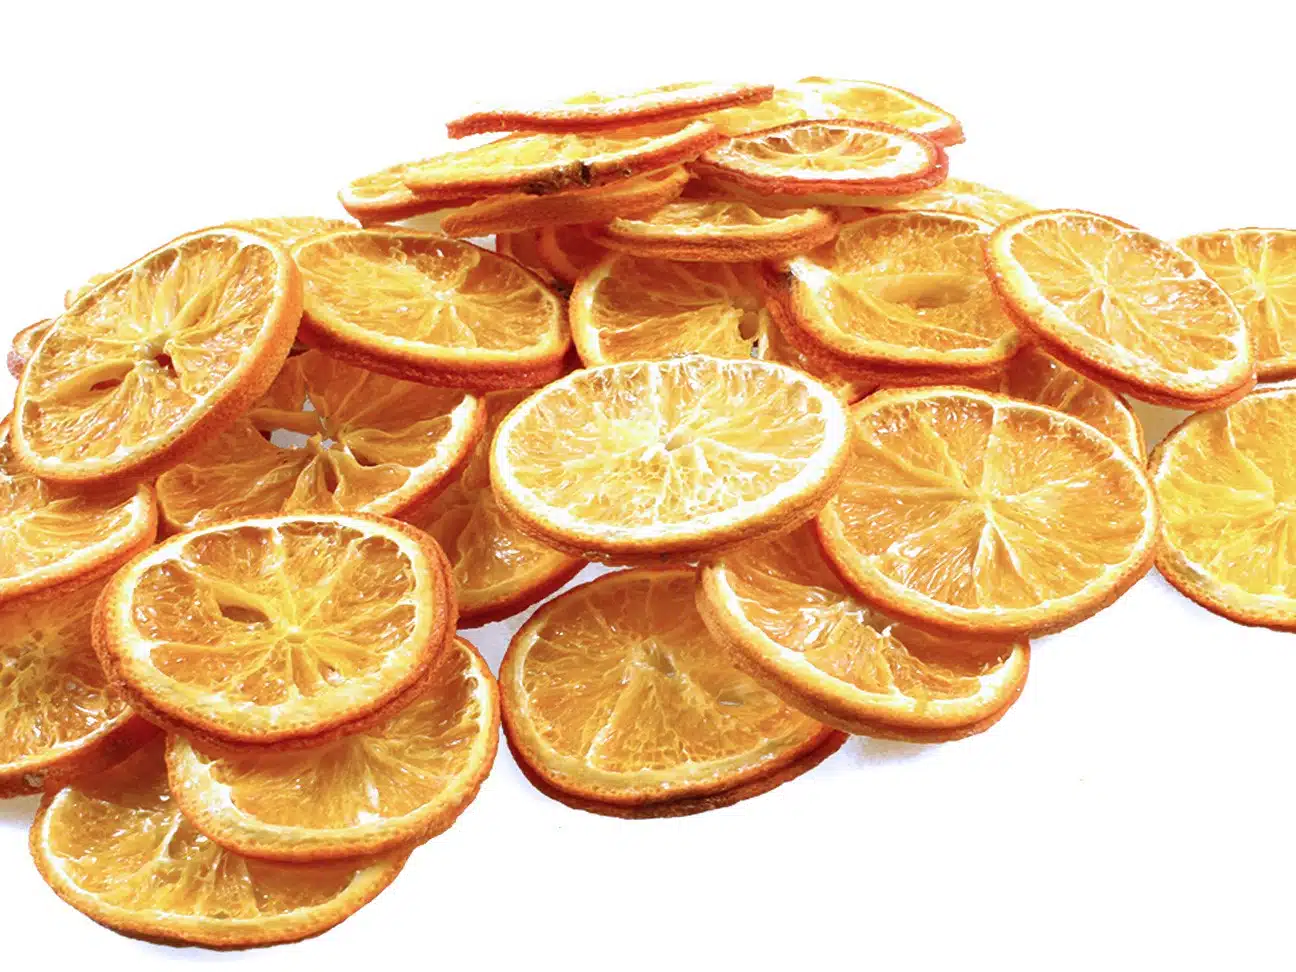 Suszone plastry pomarańczy 250g